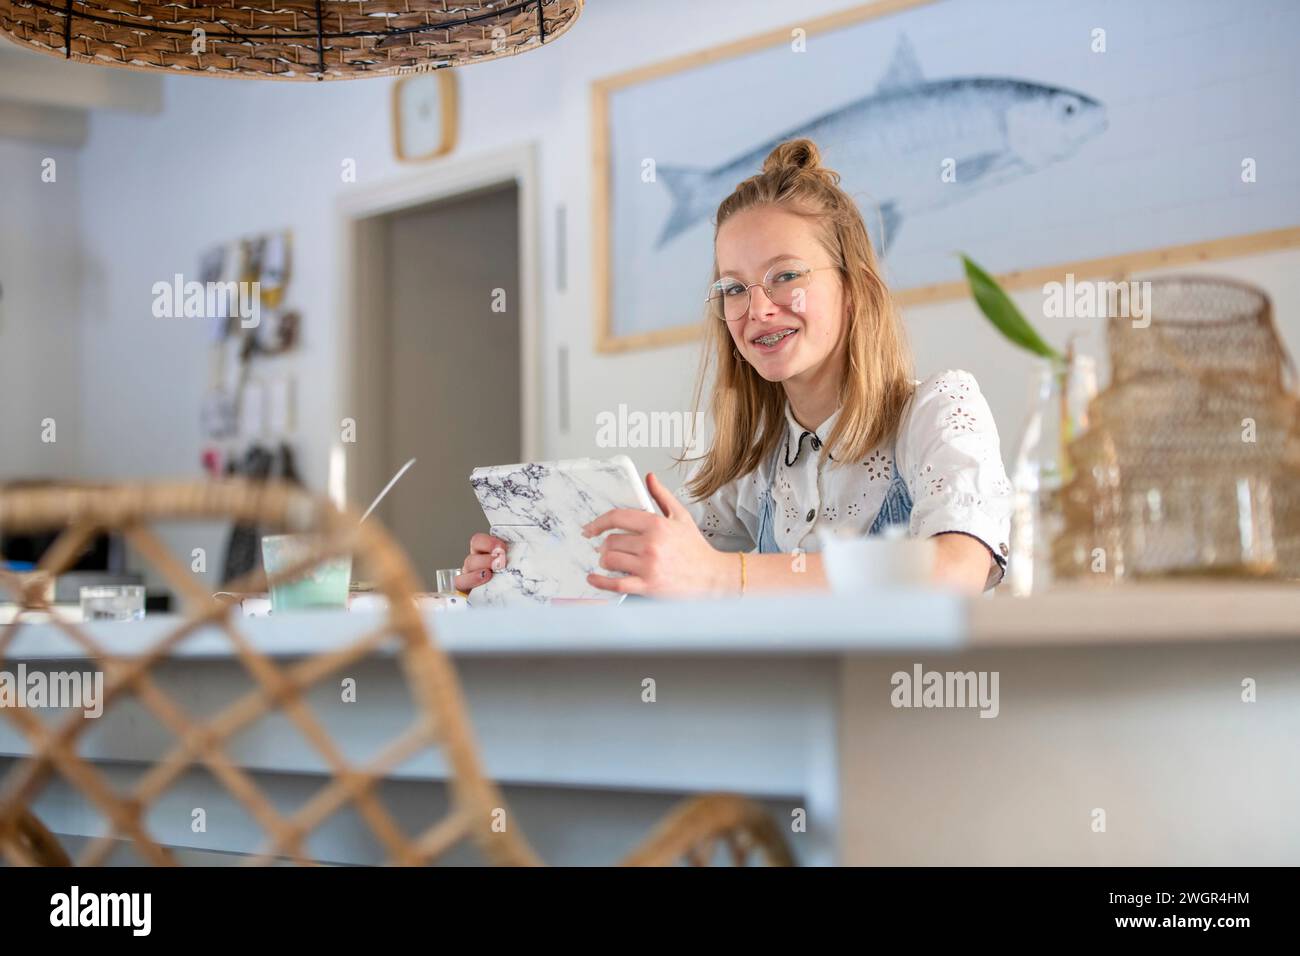 Porträt der blonden attraktiven jungen Frau auf ihrem Tablet am Küchentisch Stockfoto